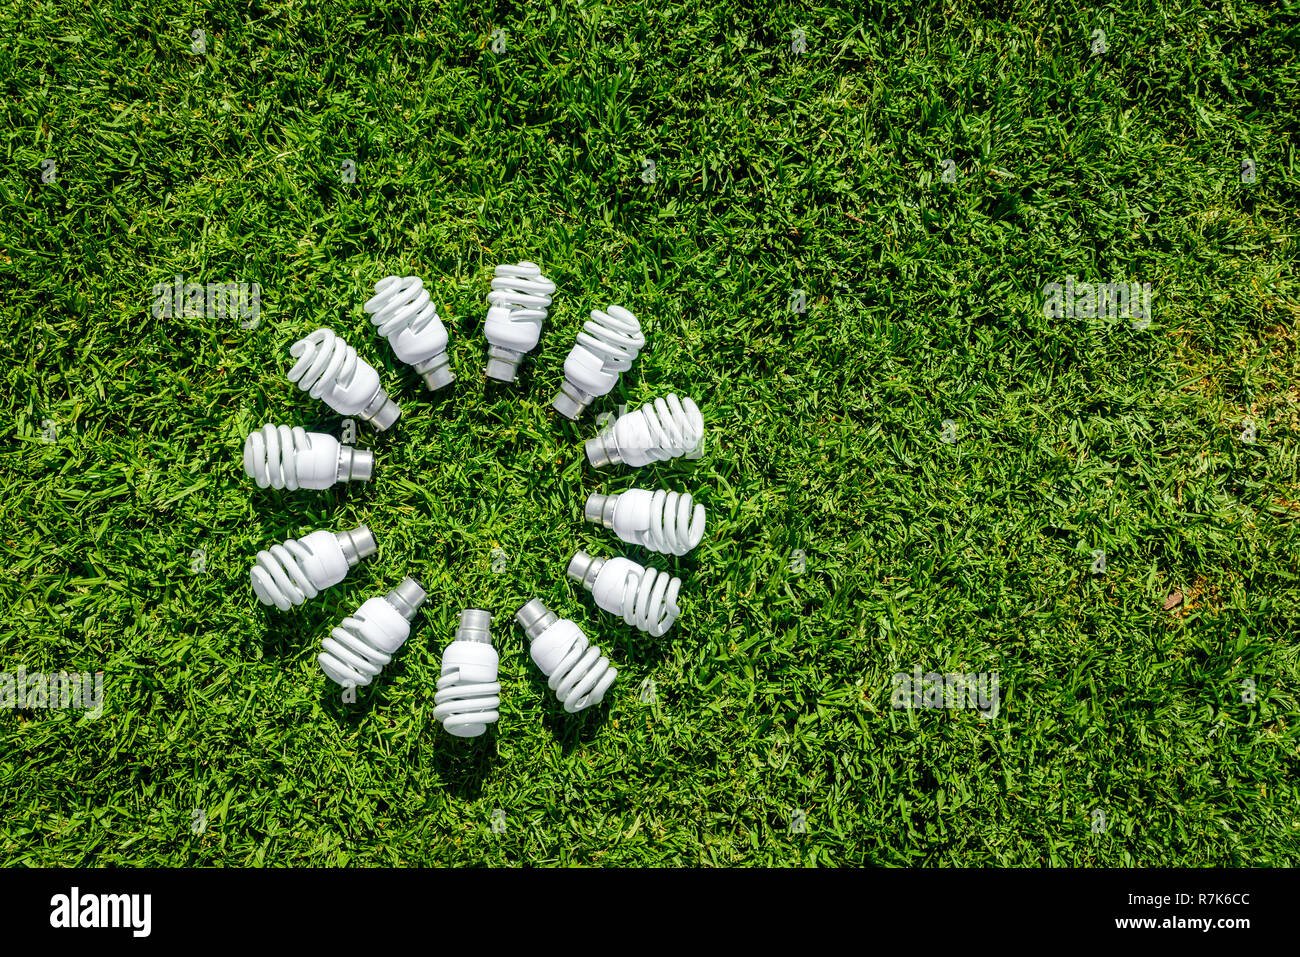 Energy saving light bulbs on grass forming circle. Energy saving concept Stock Photo